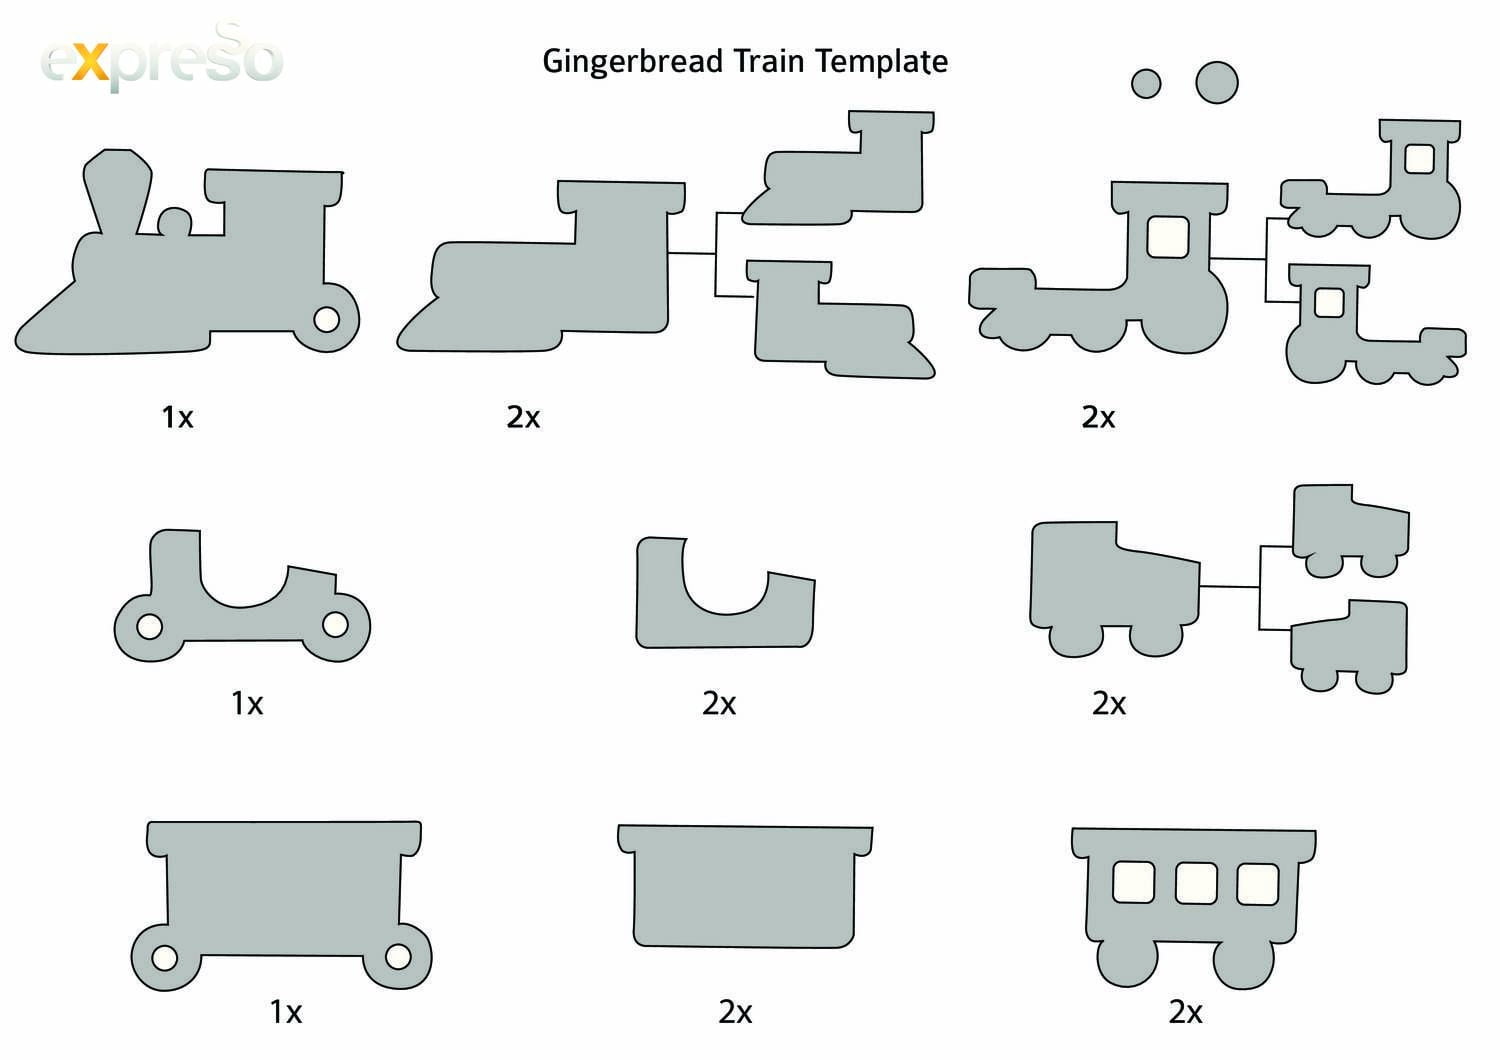 Gingerbread Train Template 1x 2x 1x 2x 2x 1x 2x 2x 2x Gingerbread Train Train Template Gingerbread